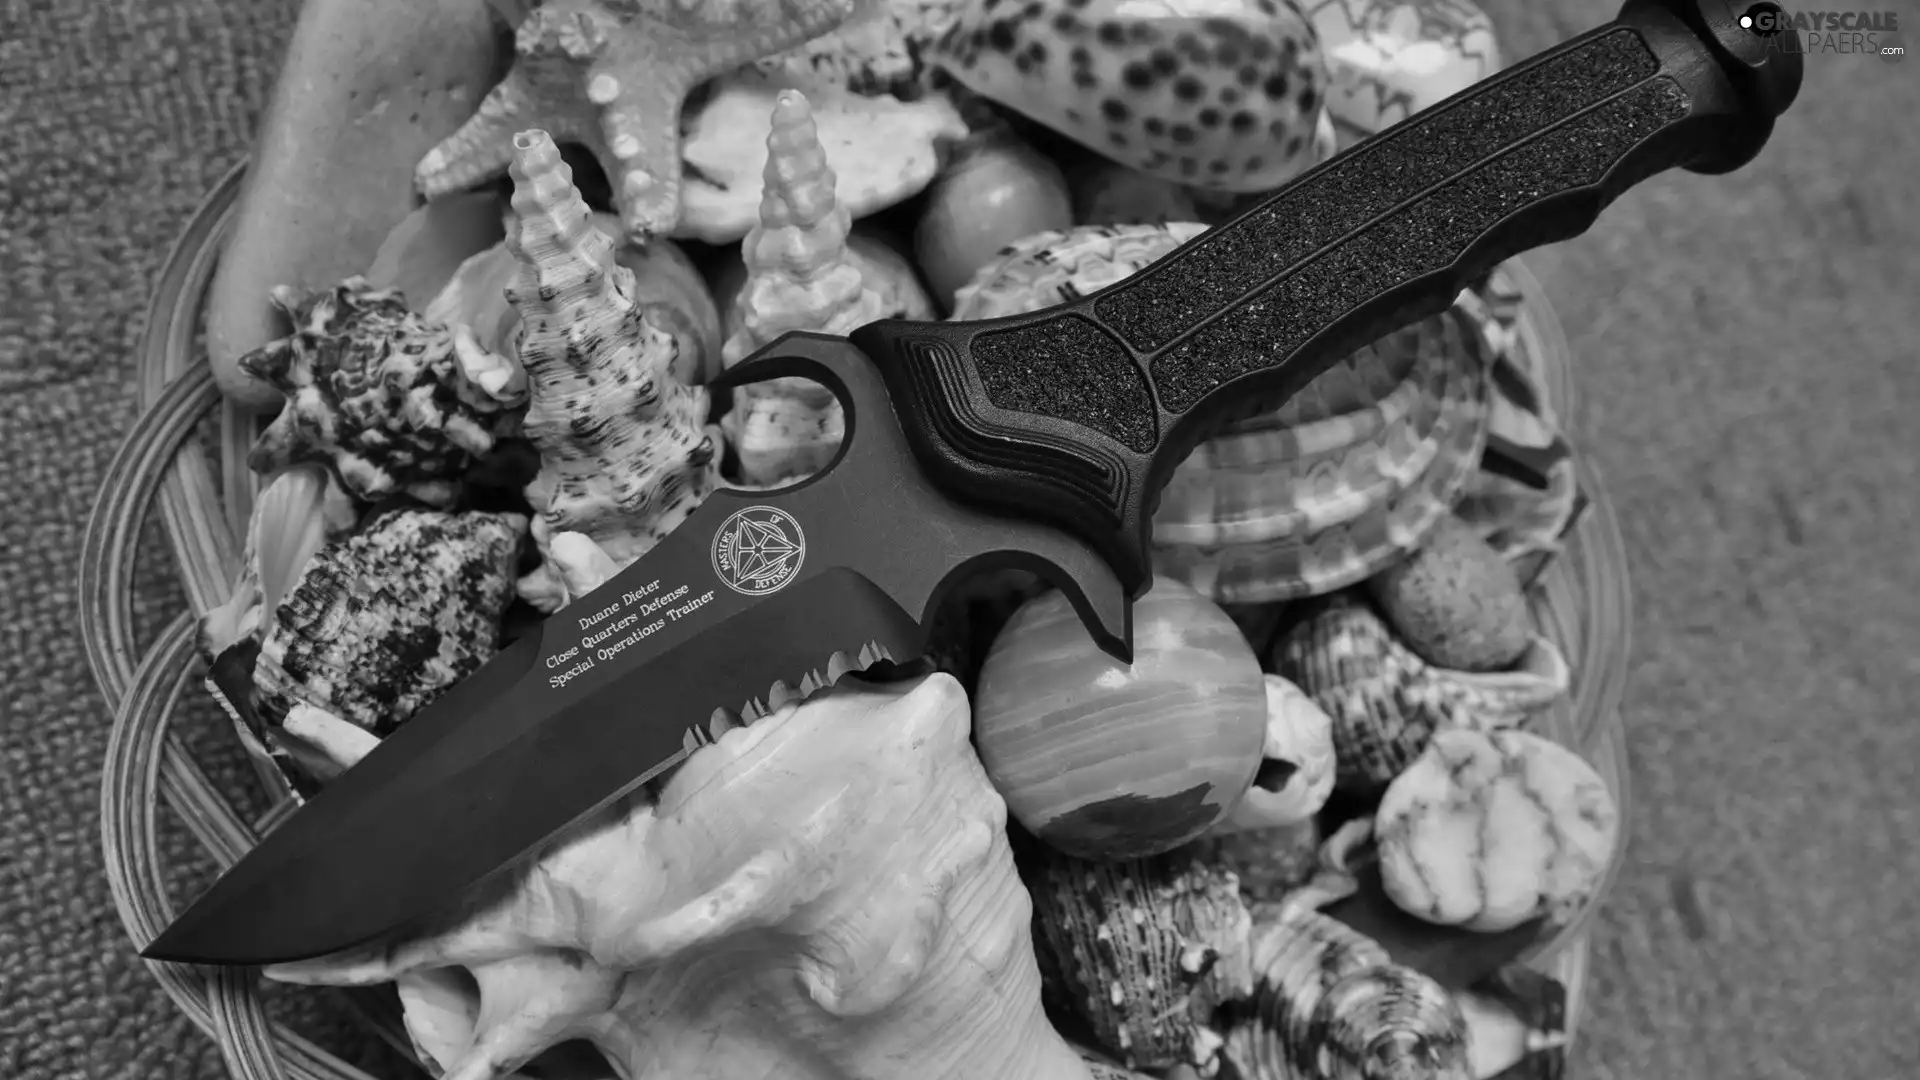 Shells, knife